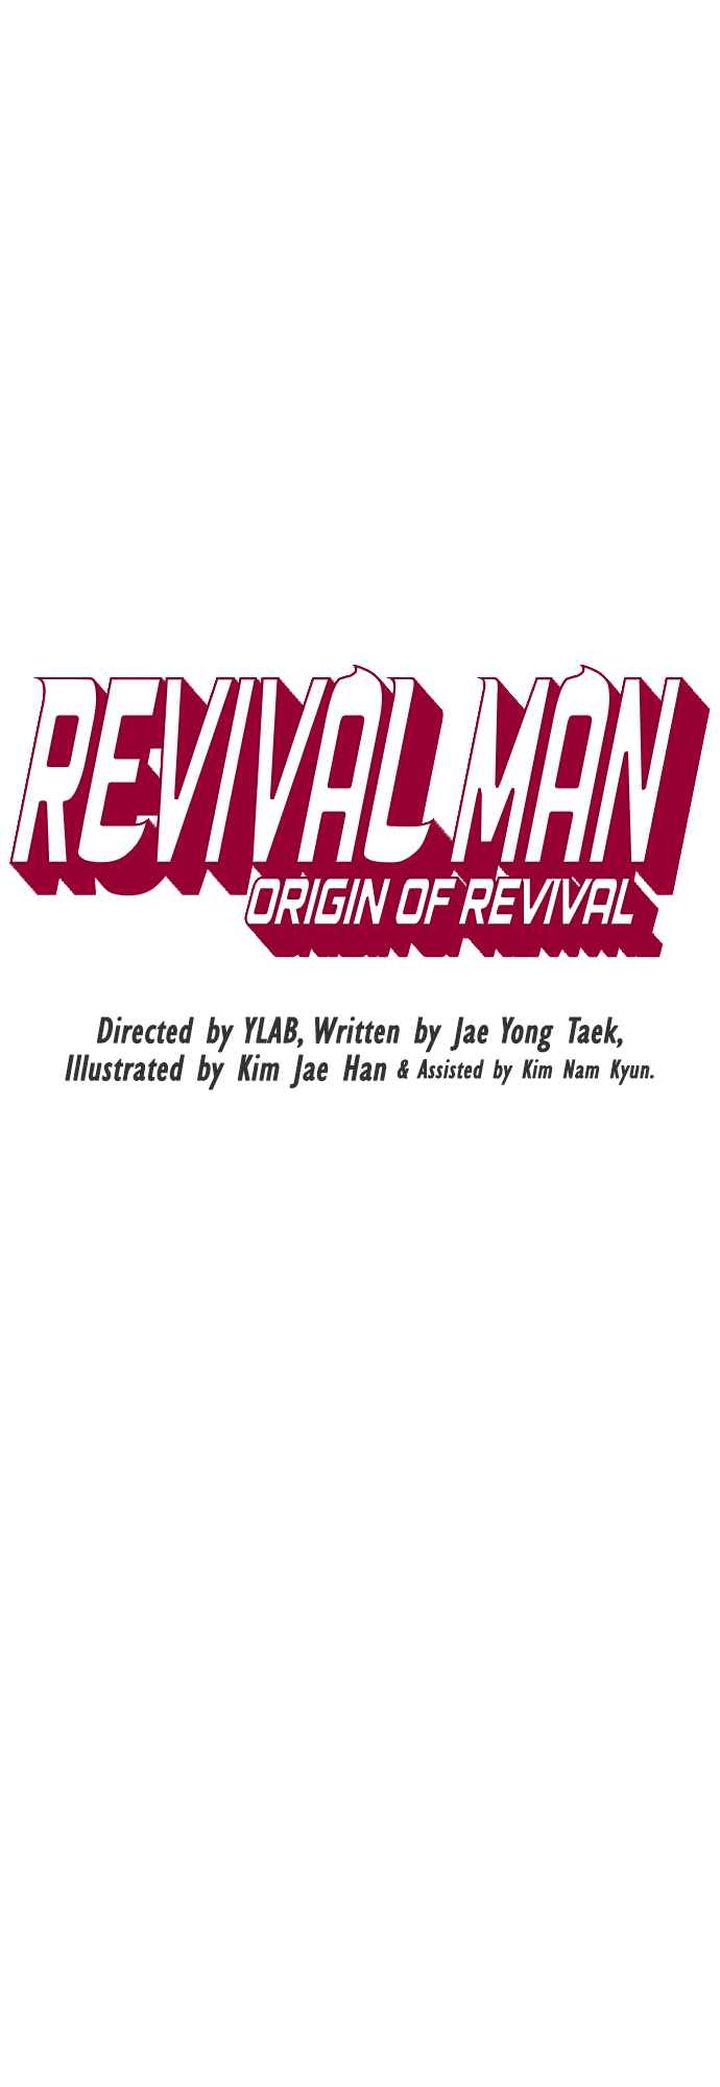 revival_man_157_9